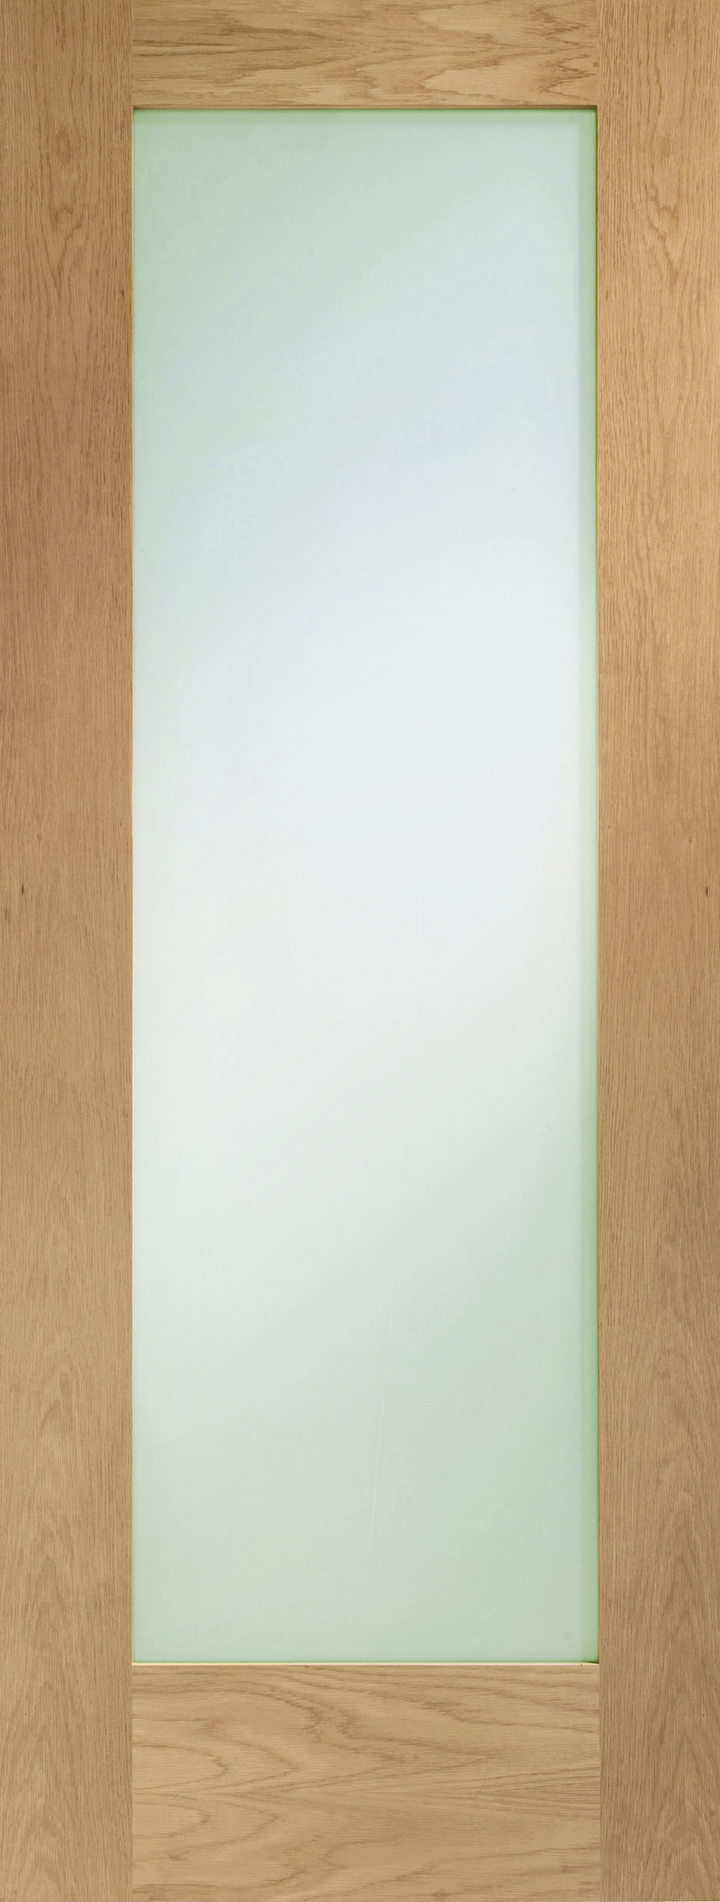 Pattern 10 Internal Oak Door with Obscure Glass